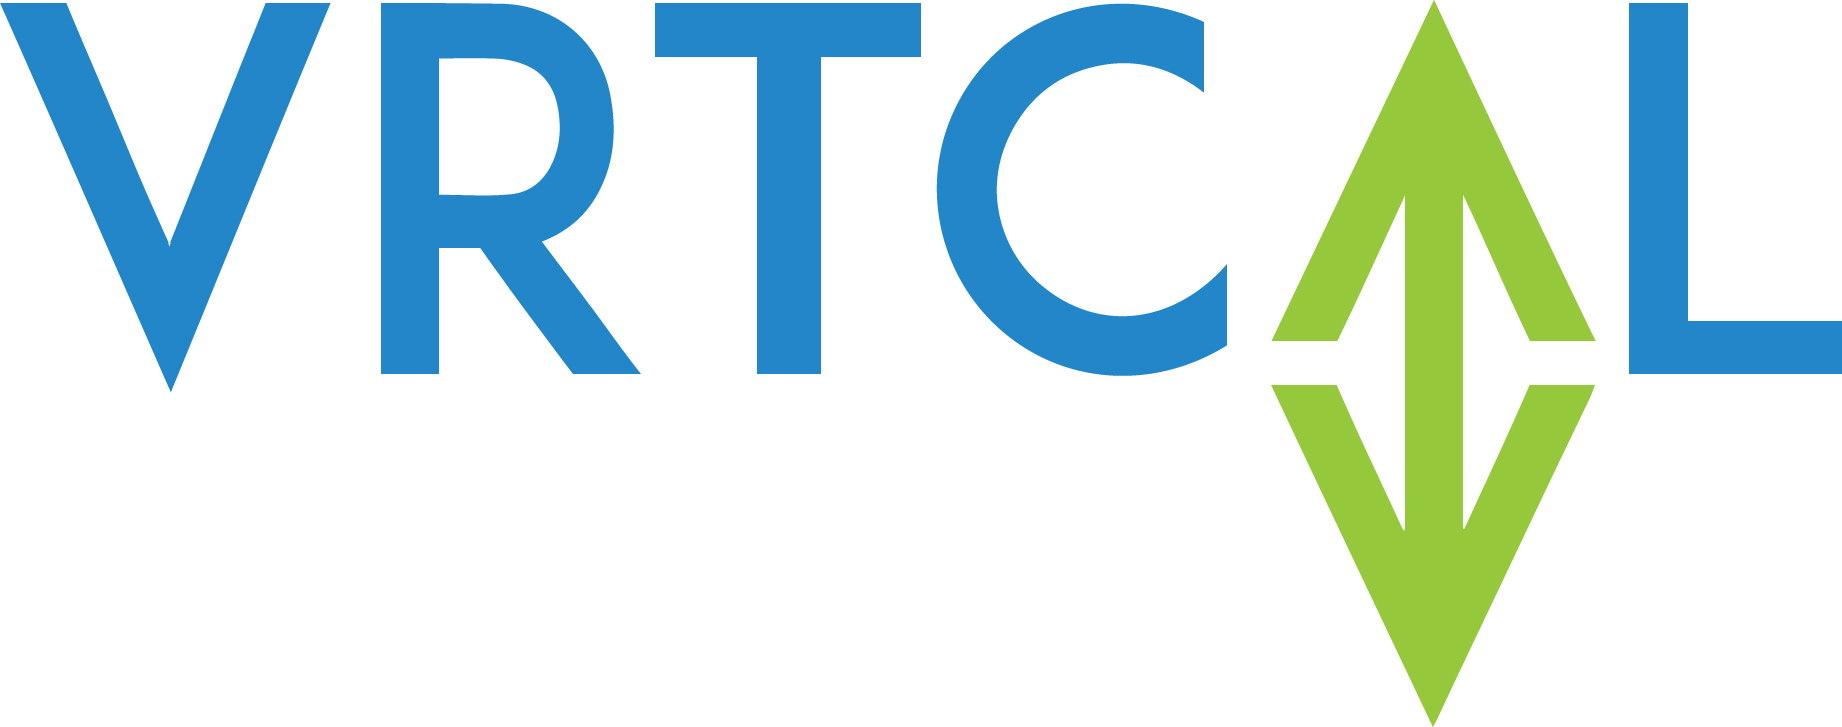 VRTCAL - logo3.jpg